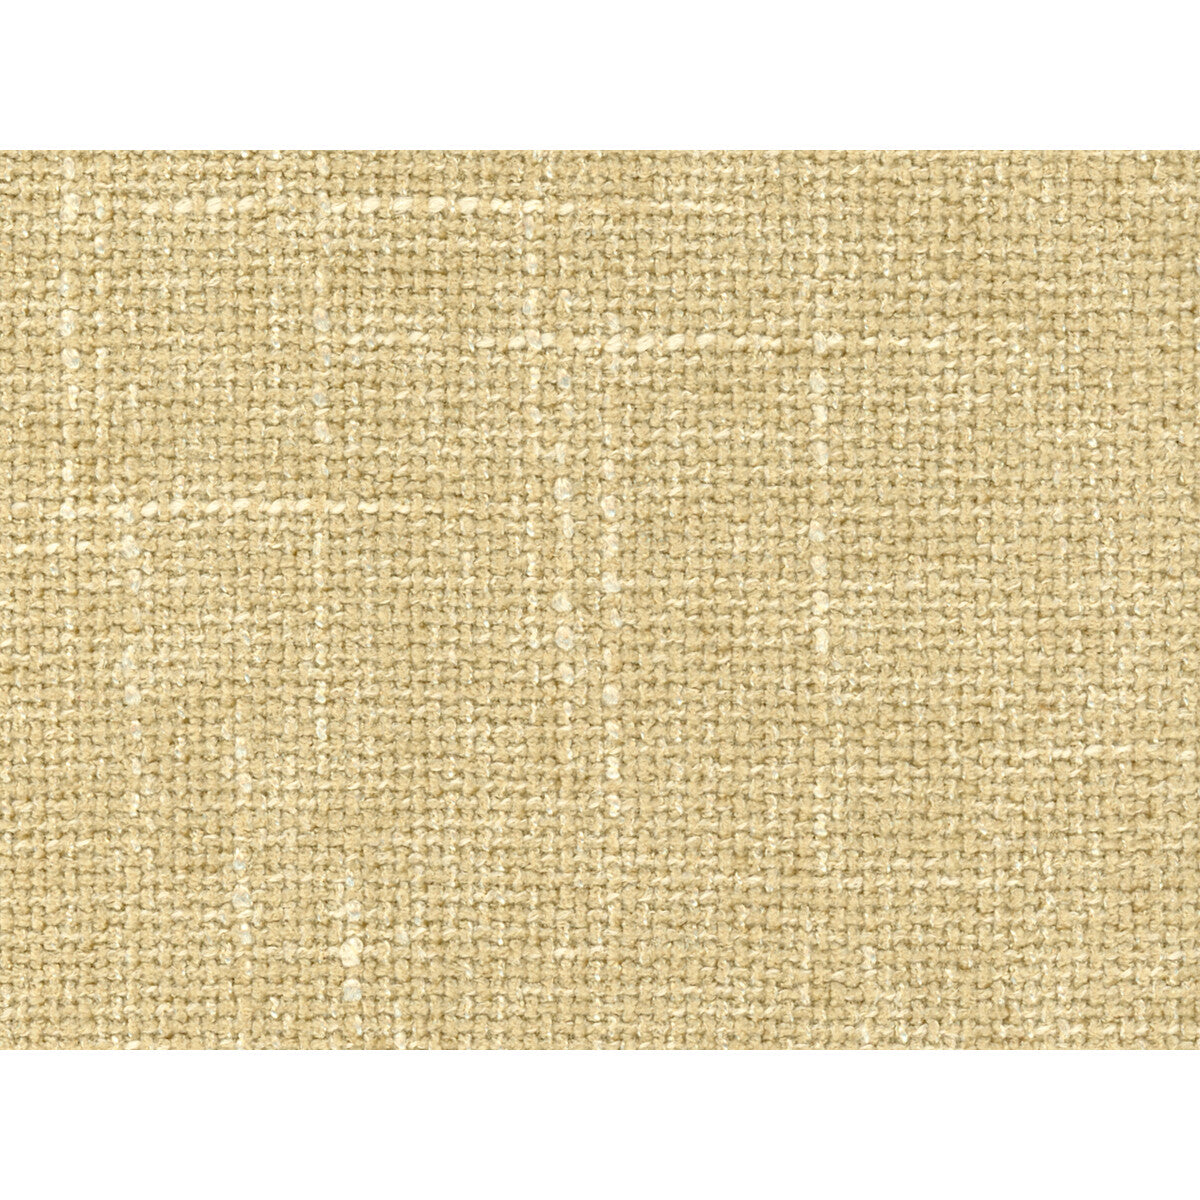 Kravet Basics fabric in 34482-16 color - pattern 34482.16.0 - by Kravet Basics